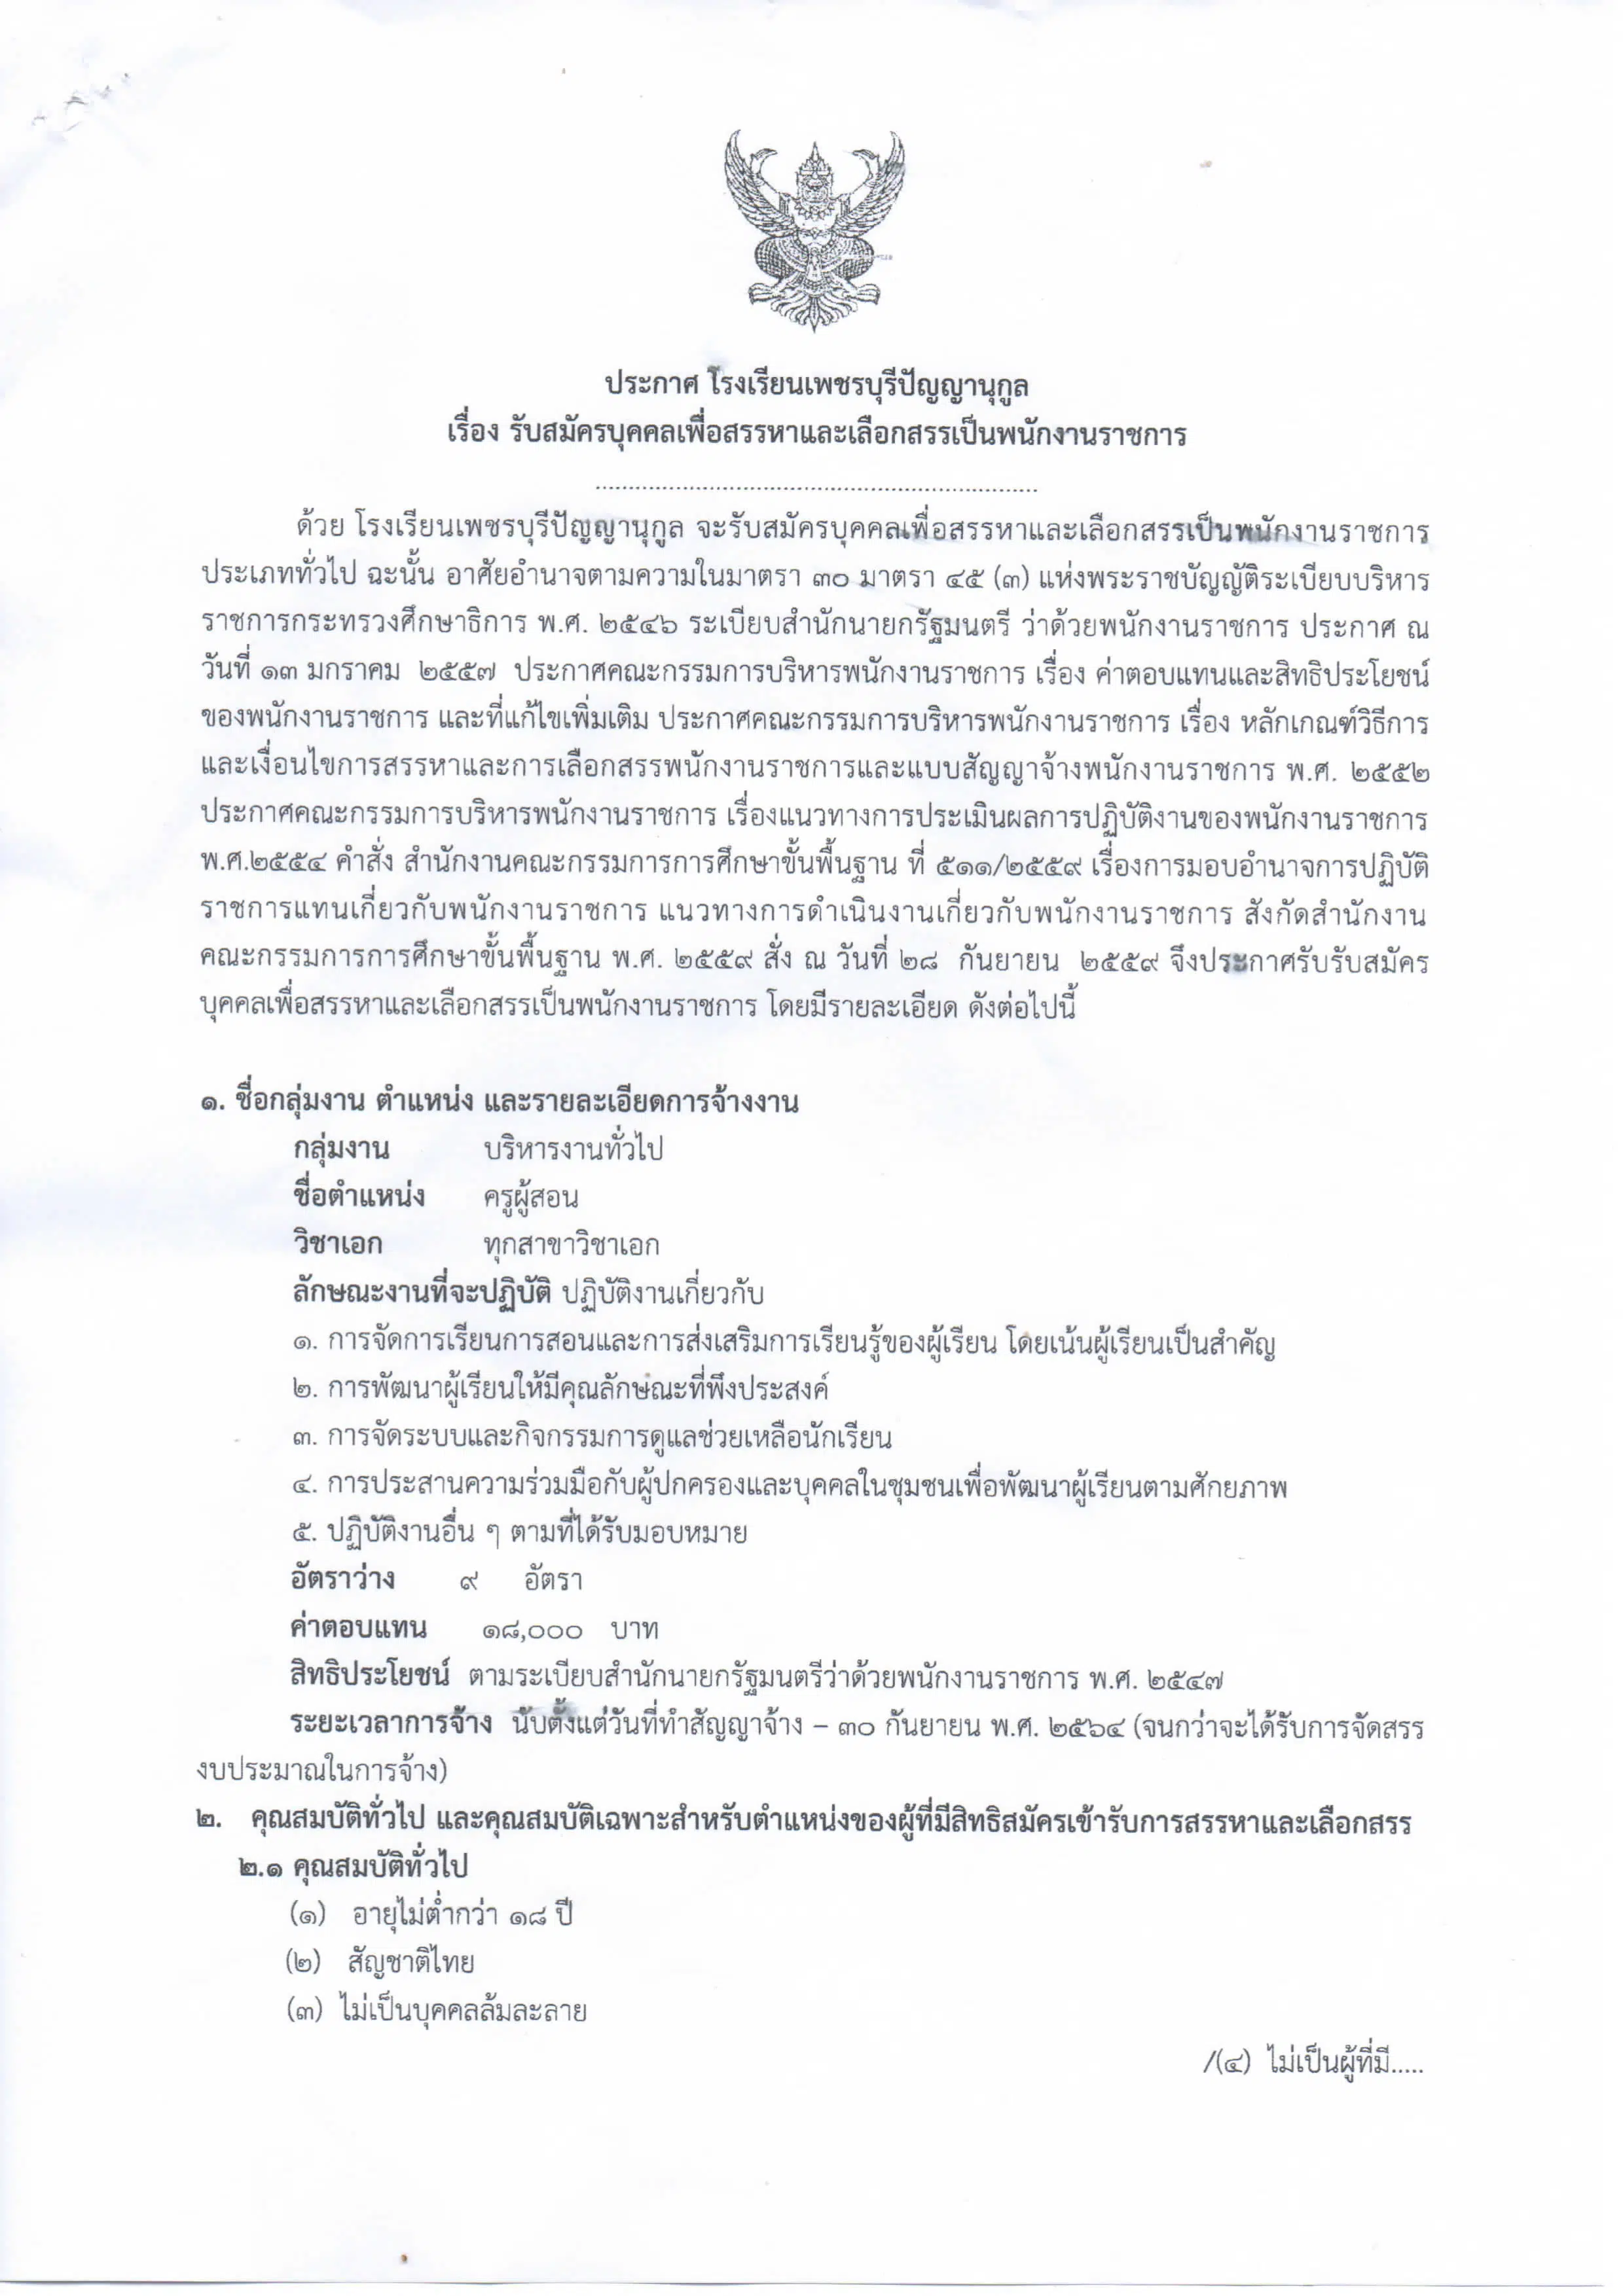 โรงเรียนเพชรบุรีปัญญานุกูล เปิดสอบพนักงานราชการครู  ทุกสาขาวิชาเอก 9 อัตรา รับสมัคร 21-27 กันยายน 2563 